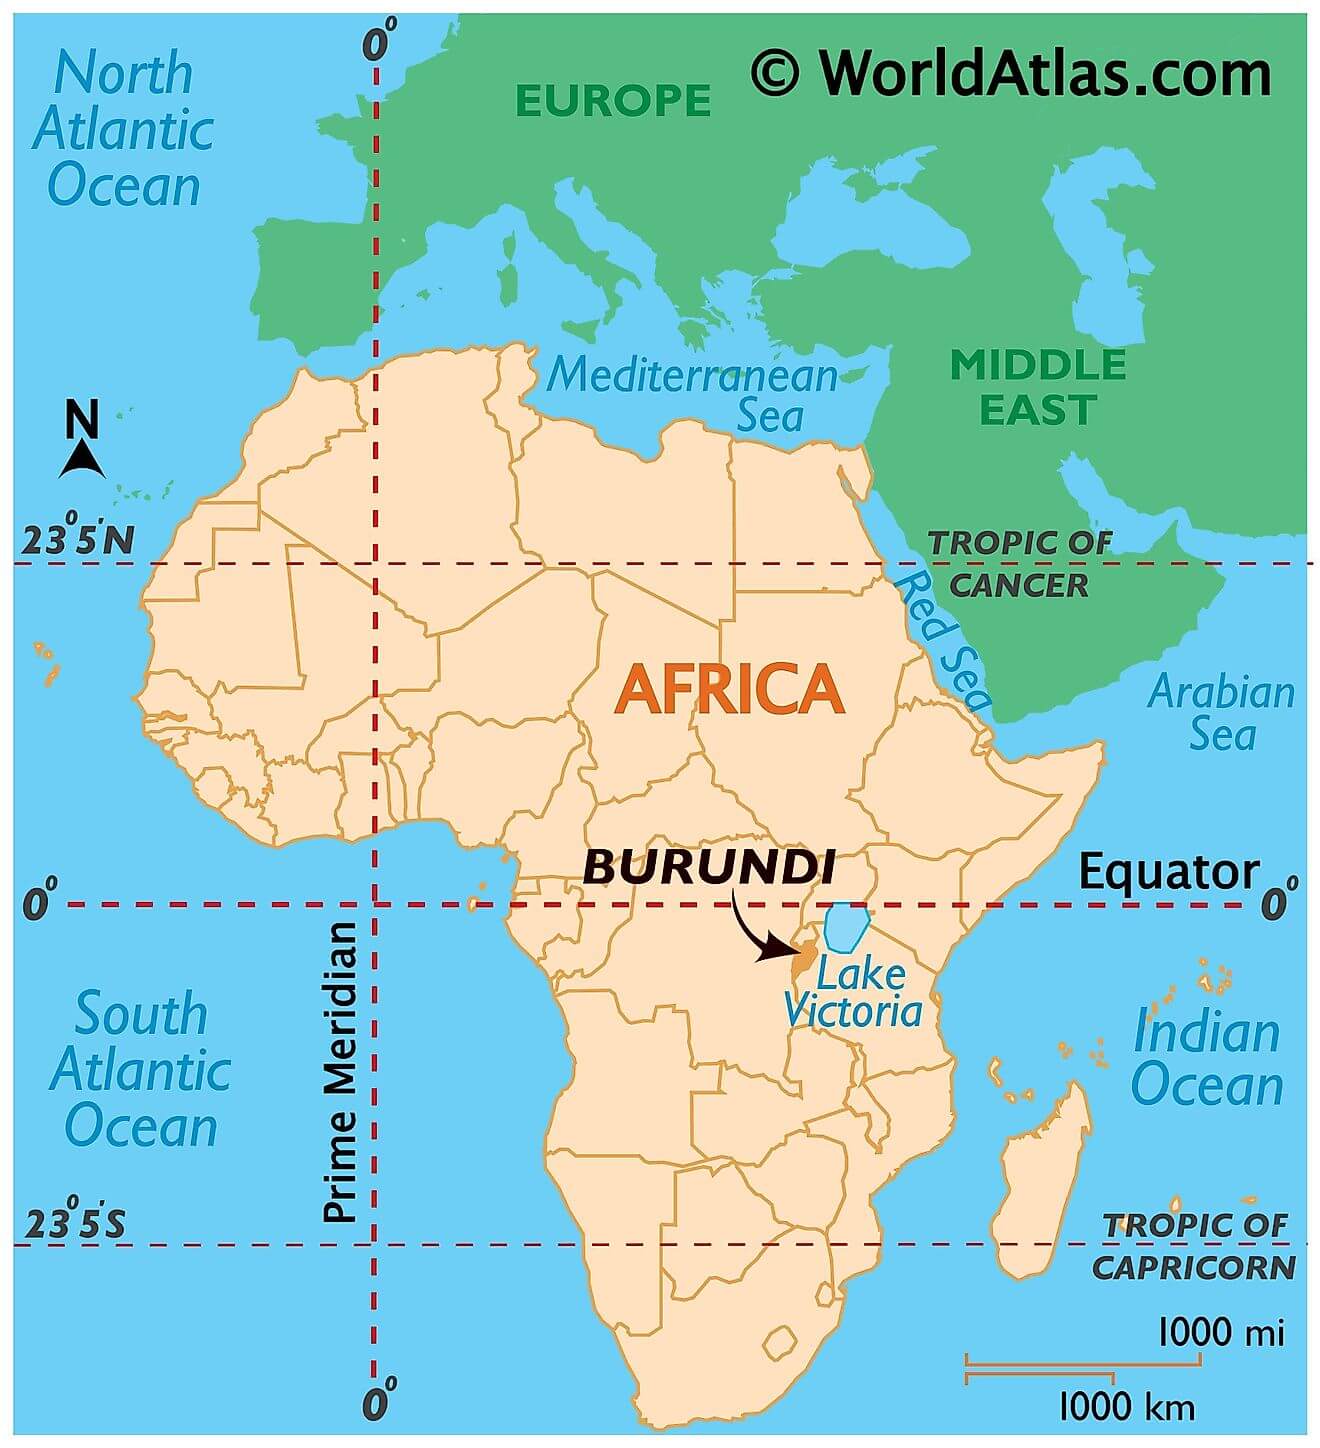 Burundi ở đâu?